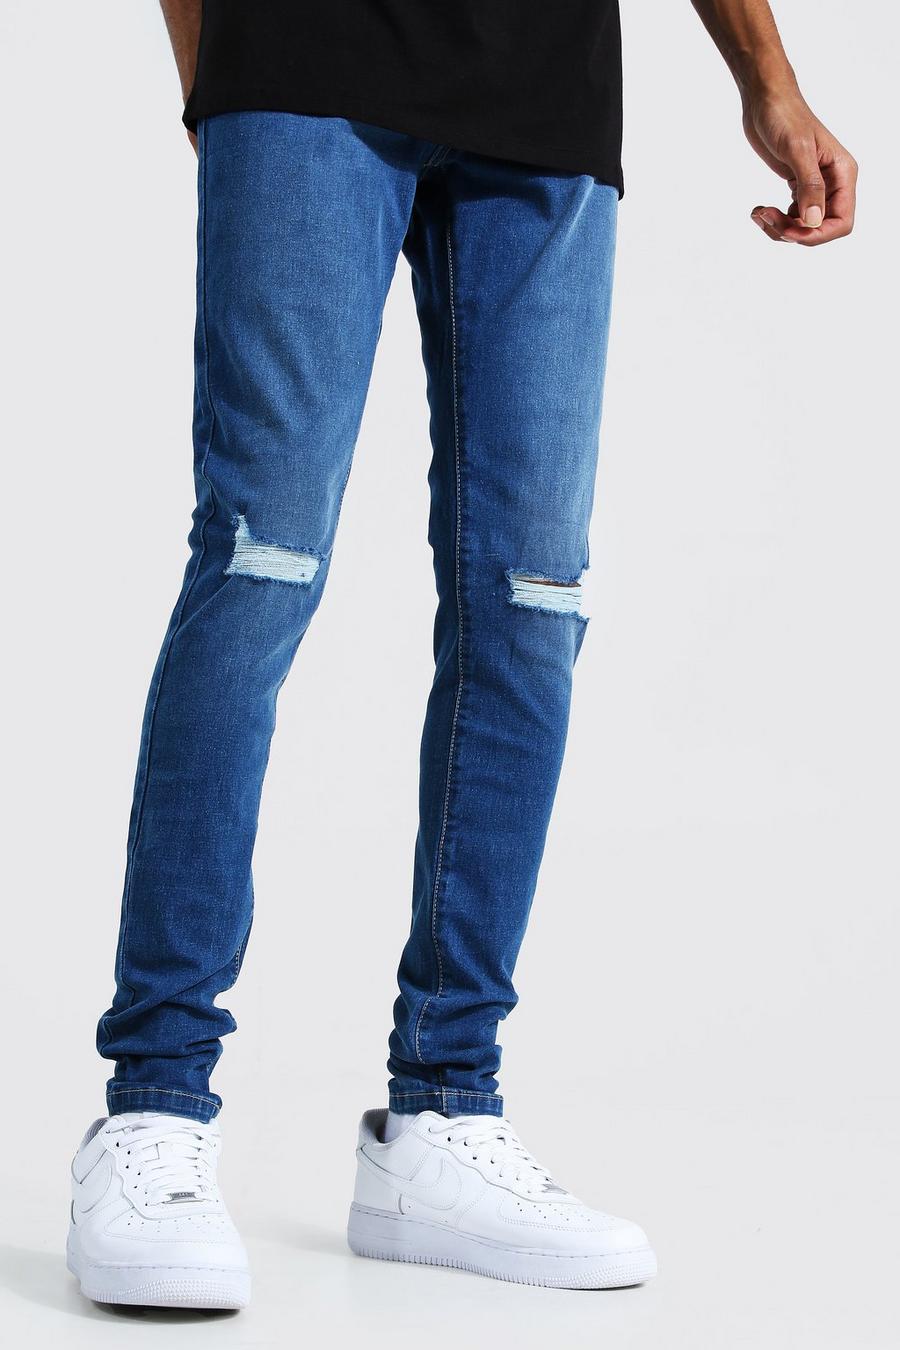 כחול ביניים סקיני ג'ינס ripped בברכיים לגברים גבוהים image number 1